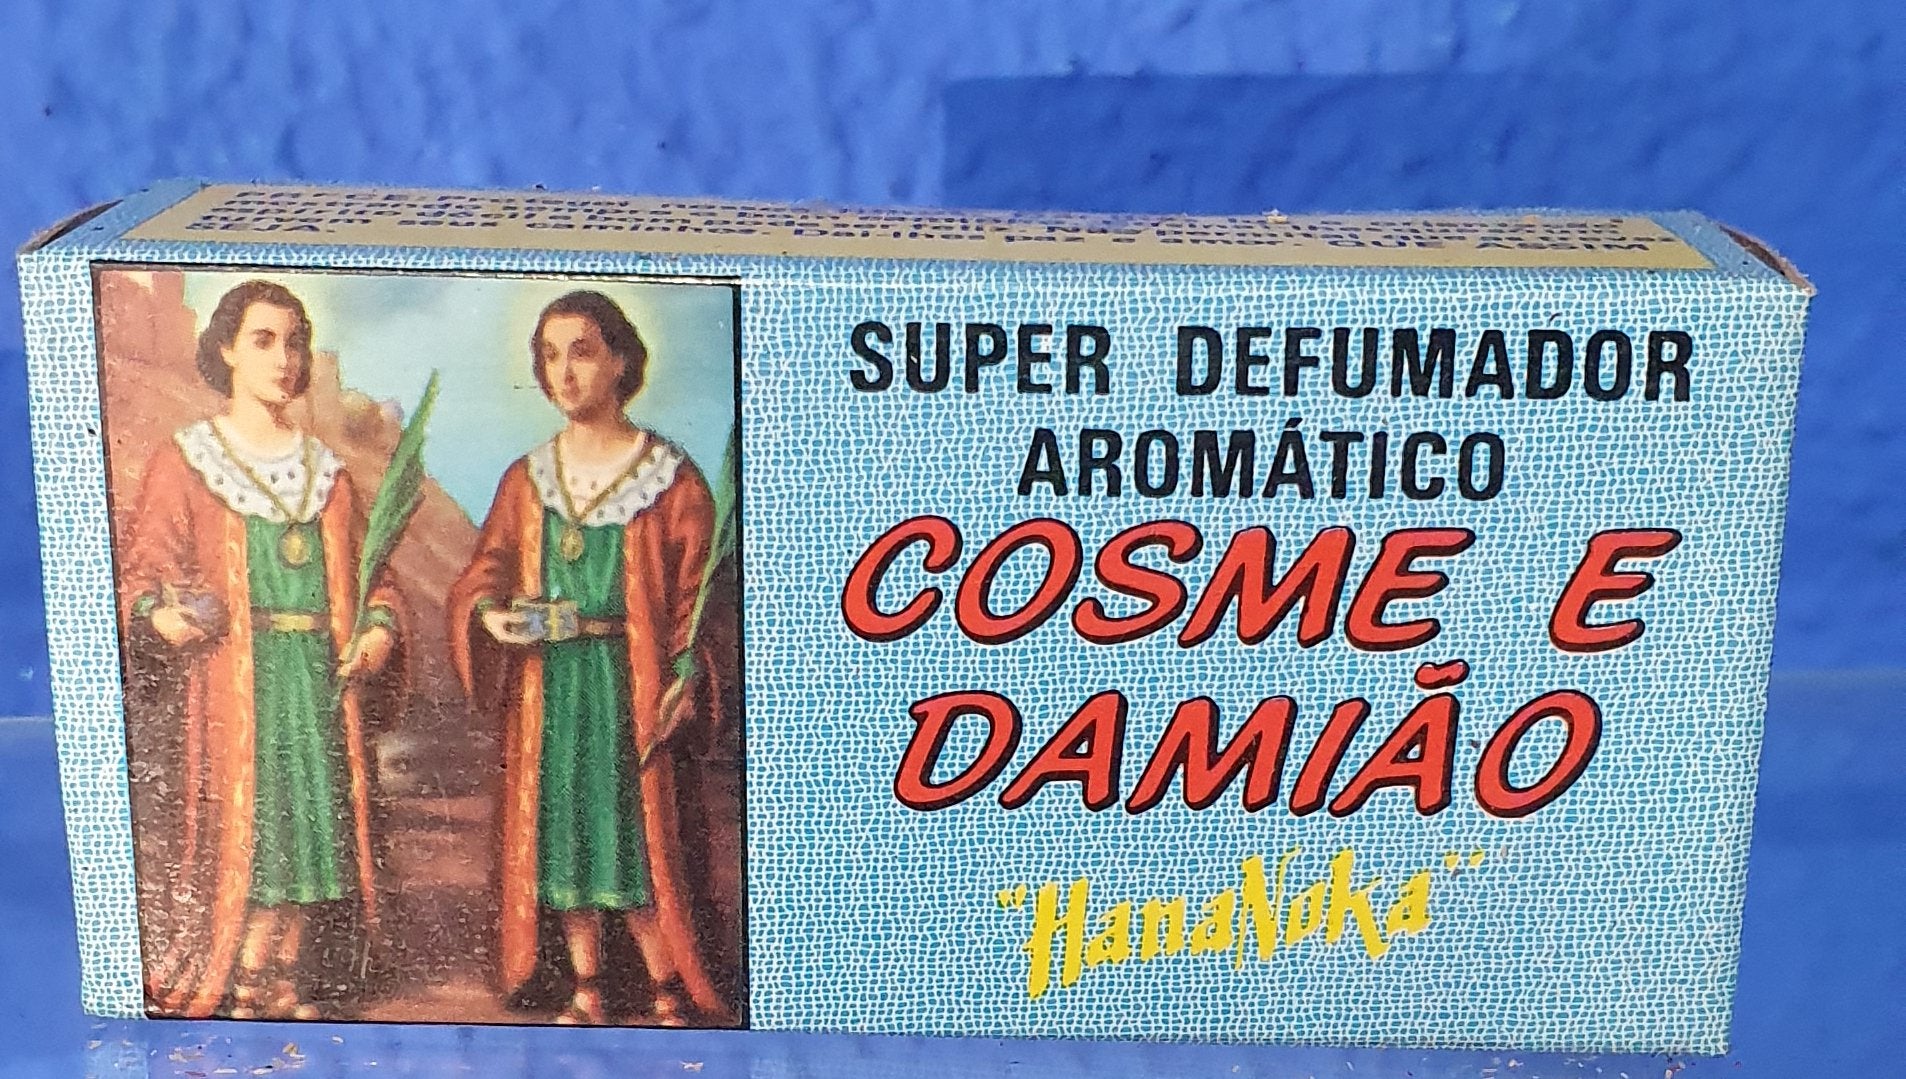 Defumador Aromático Cosme y Damian